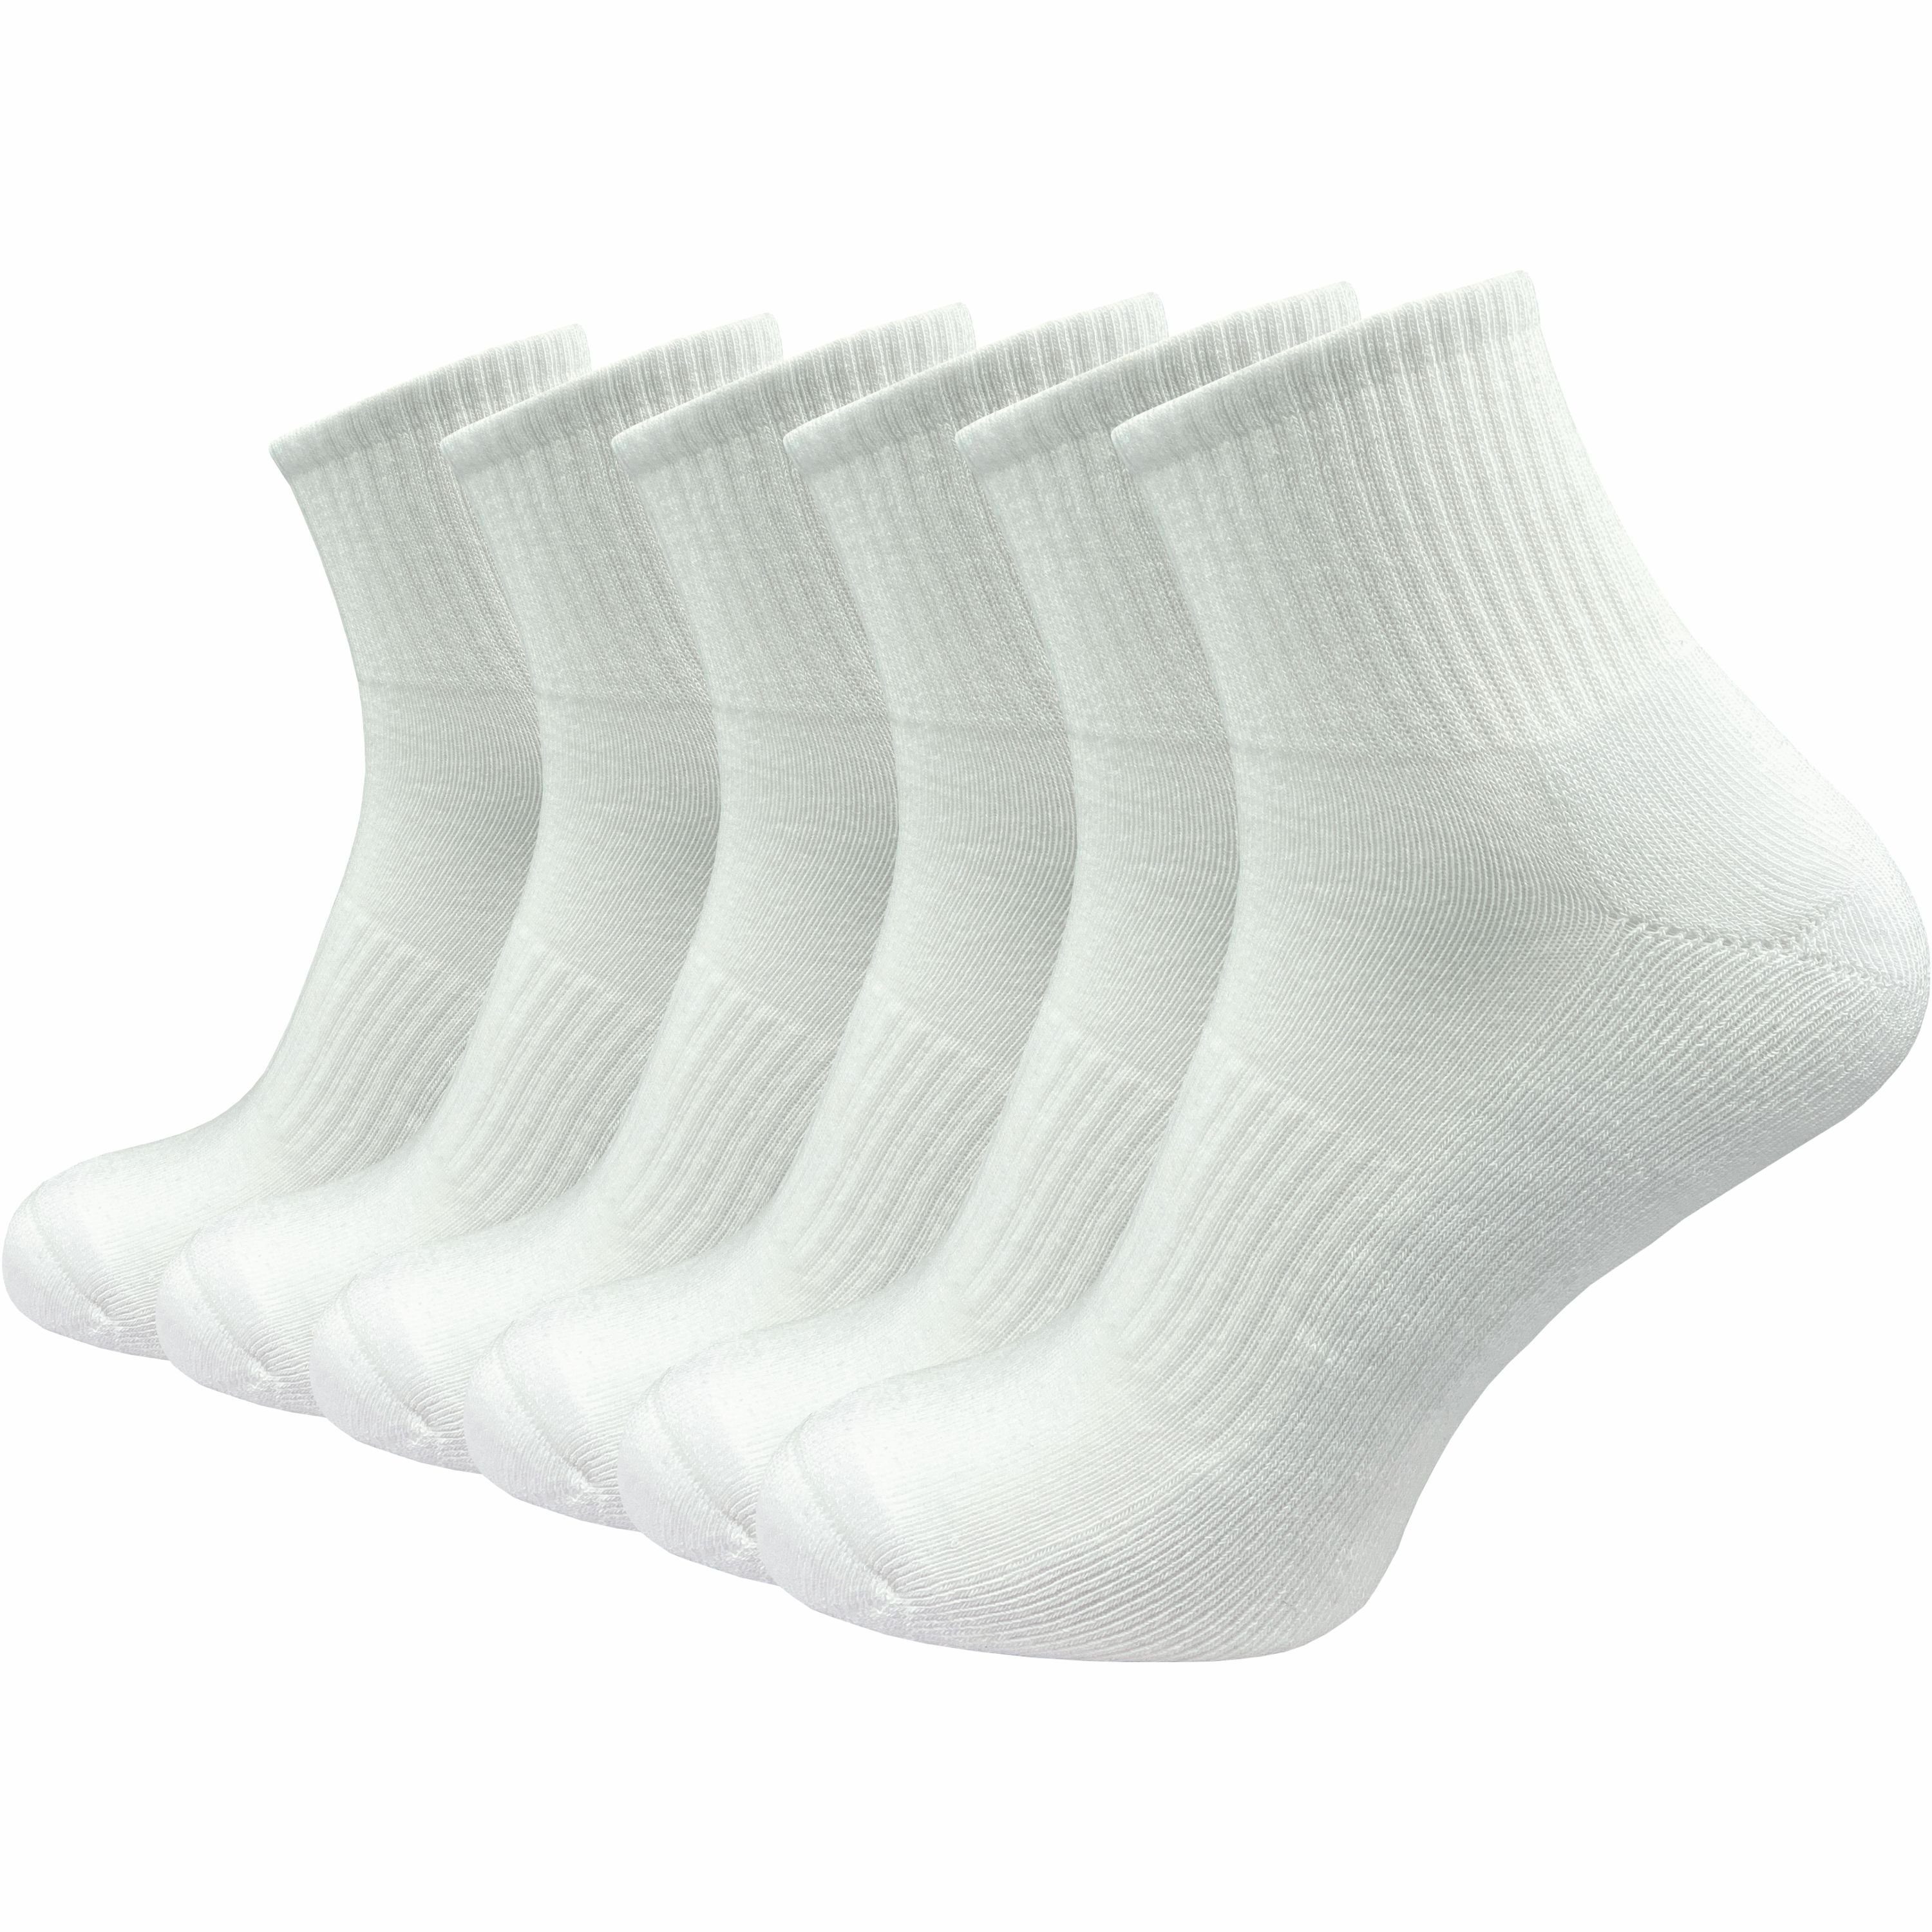 GAWILO Kurzsocken für Damen - Premium Socken für Sport & Freizeit - ohne drückende Naht (6 Paar) in weiß, schwarz & grau; leichte Plüschsohle für höchsten Tragekomfort